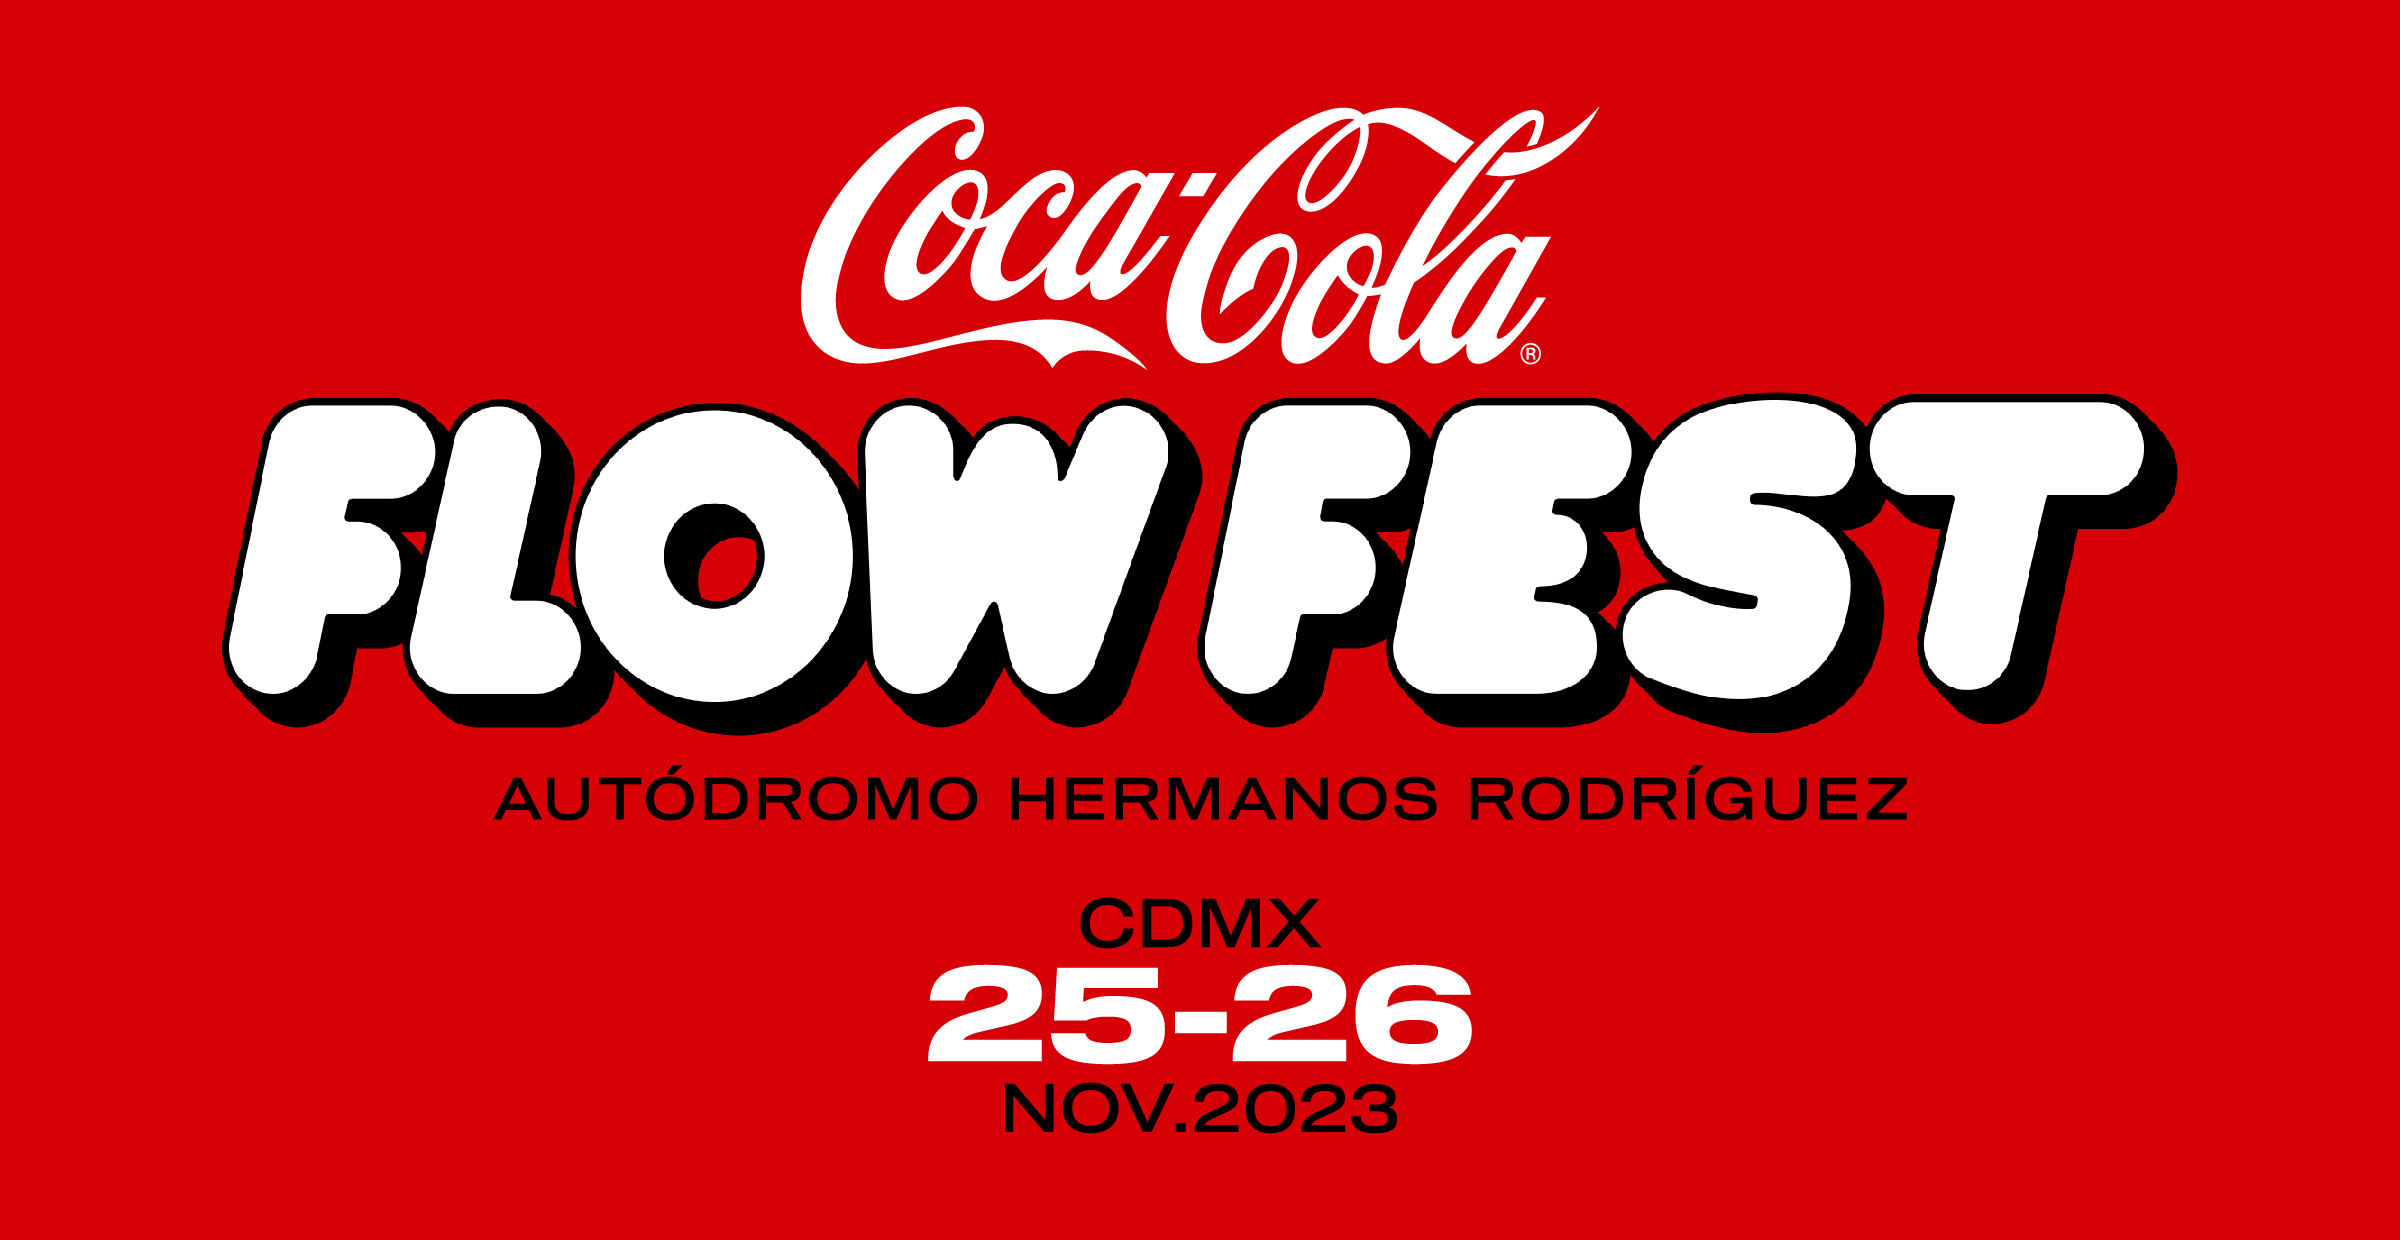 CocaCola Flow Fest 2023